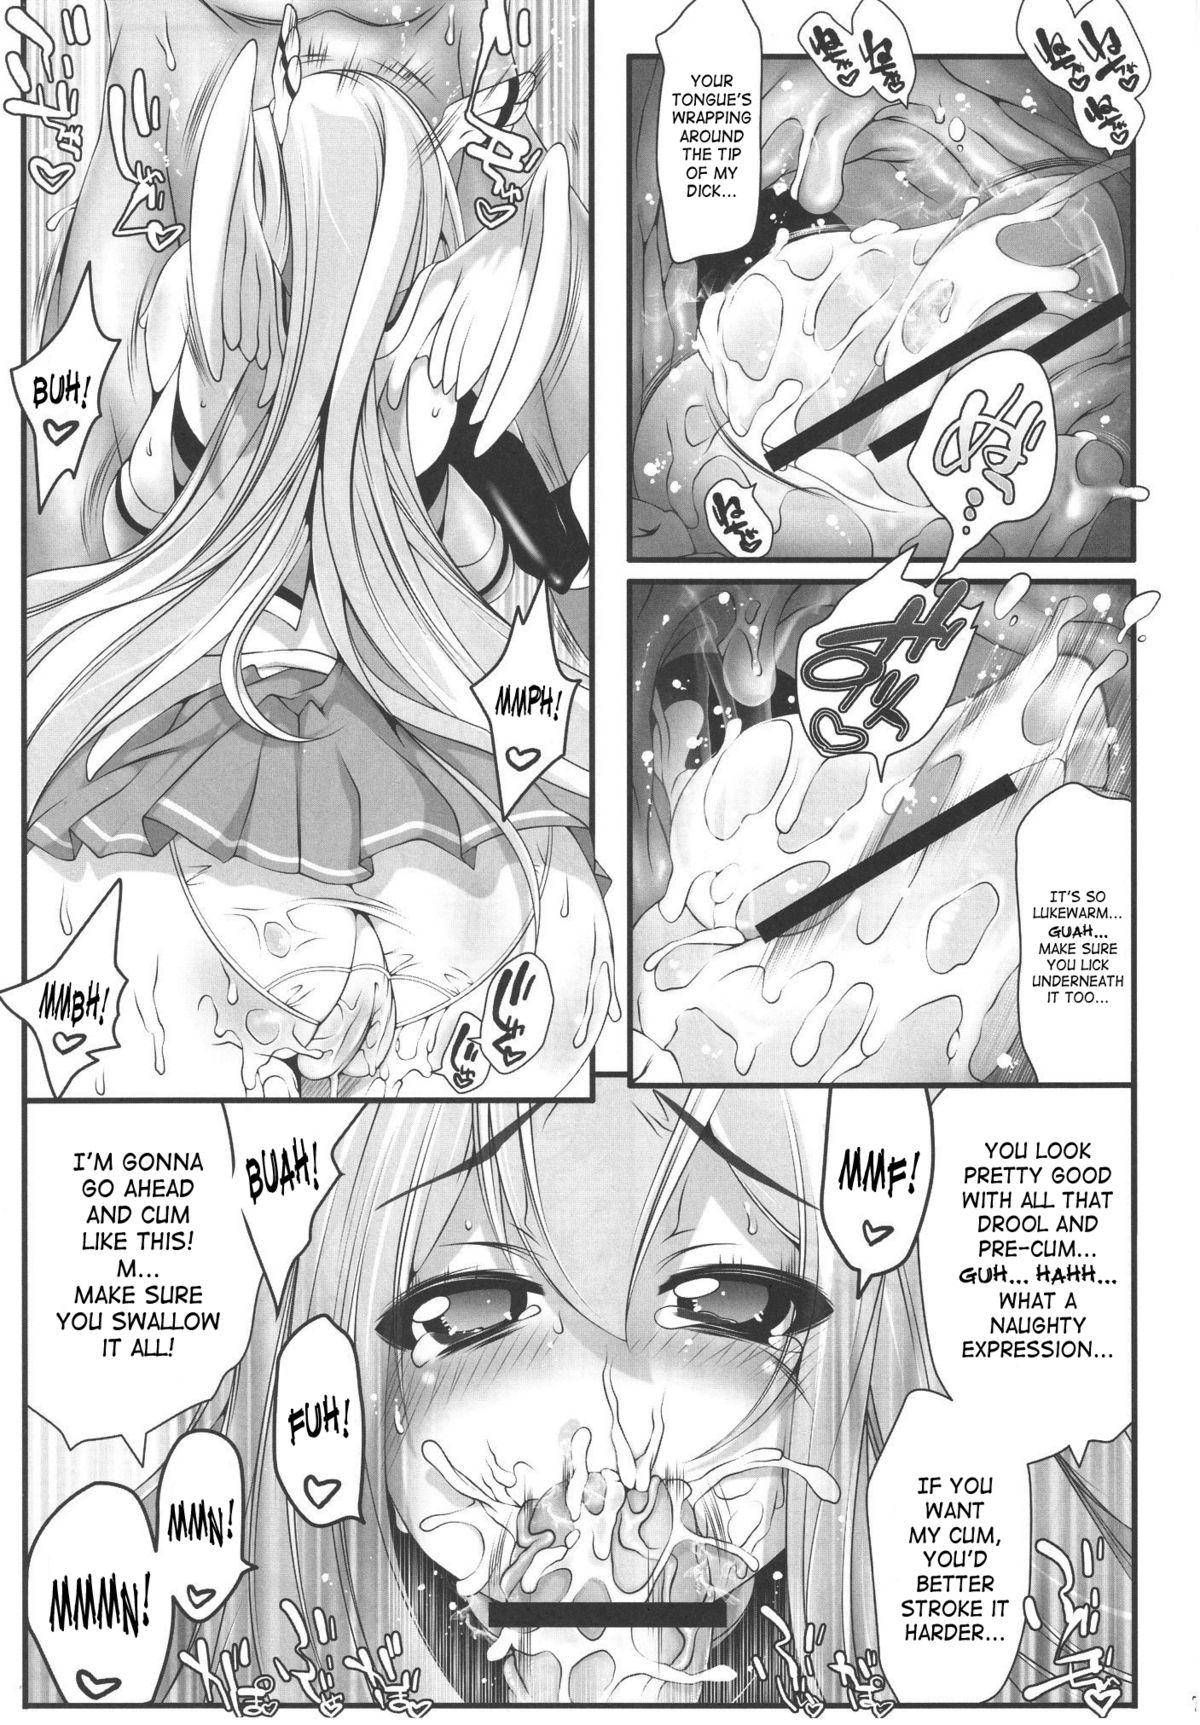 Hardcore Porno Astraea-san to. - Sora no otoshimono Licking Pussy - Page 6